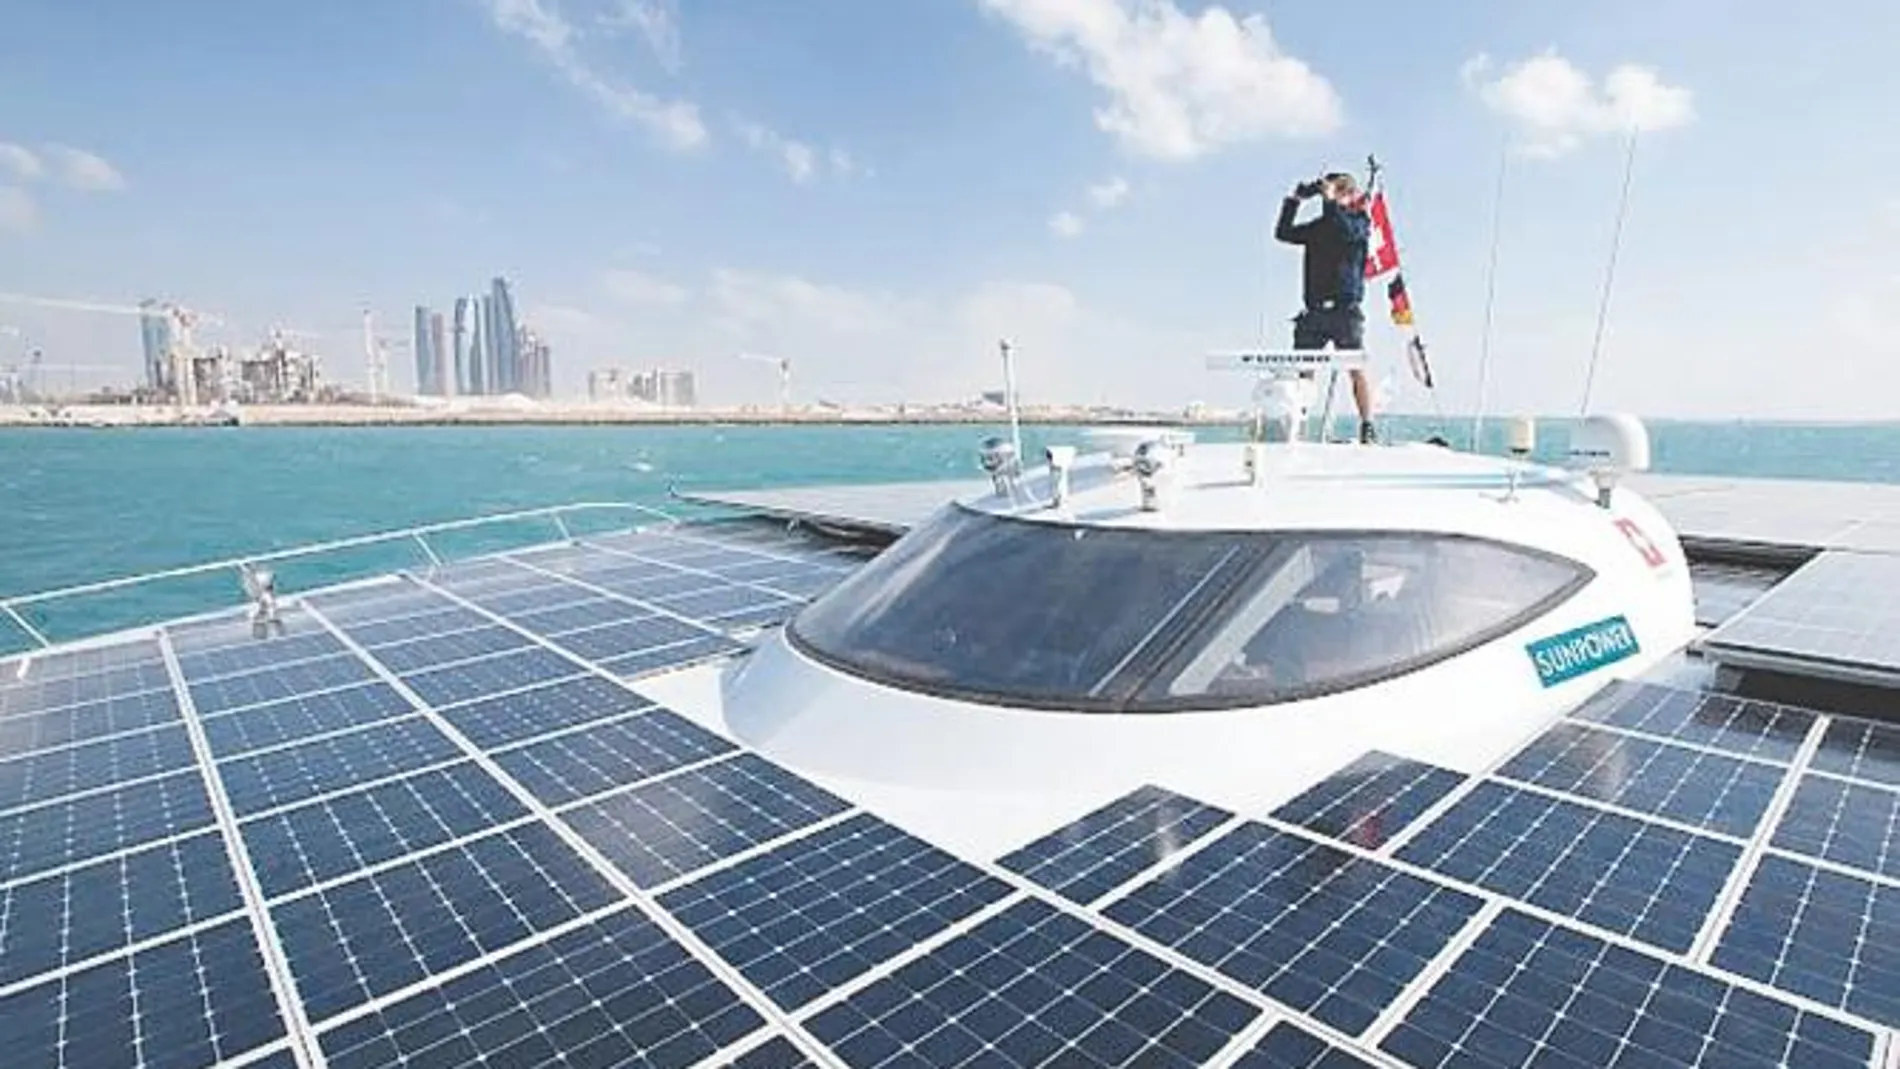 El catamarán solar termina su vuelta al mundo